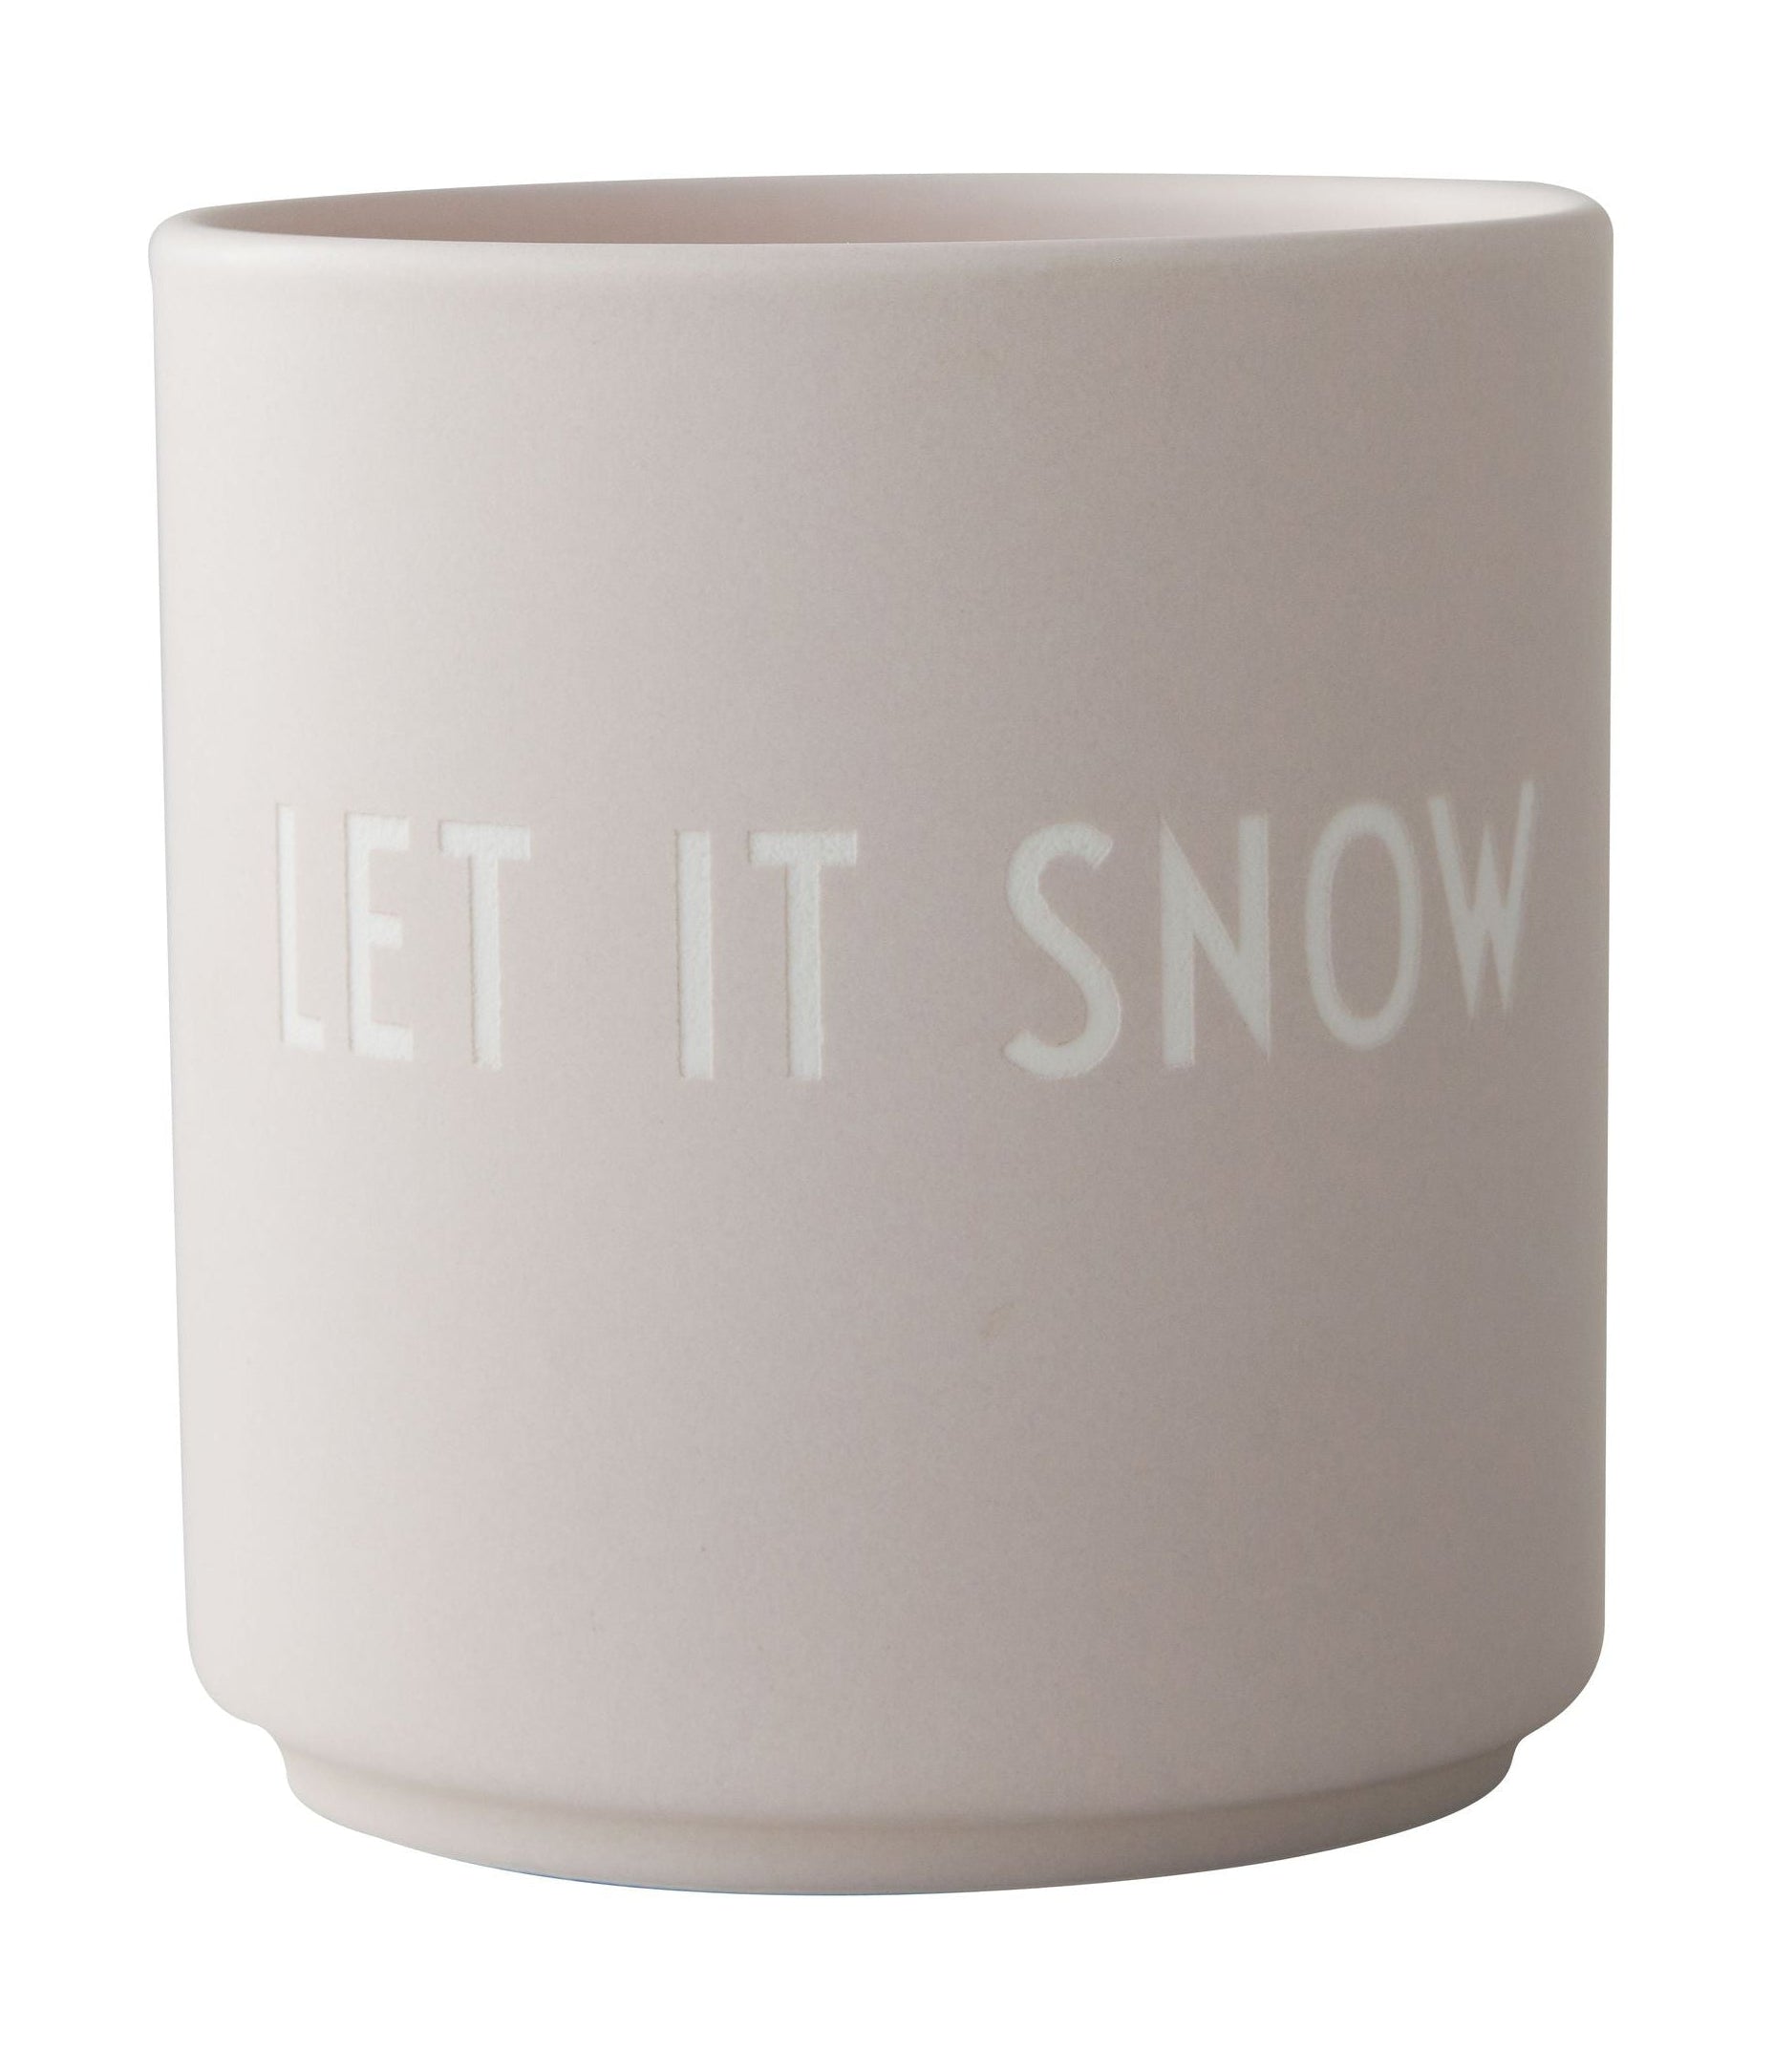 La taza favorita de la carta de diseño Let It Snow, pastel beige